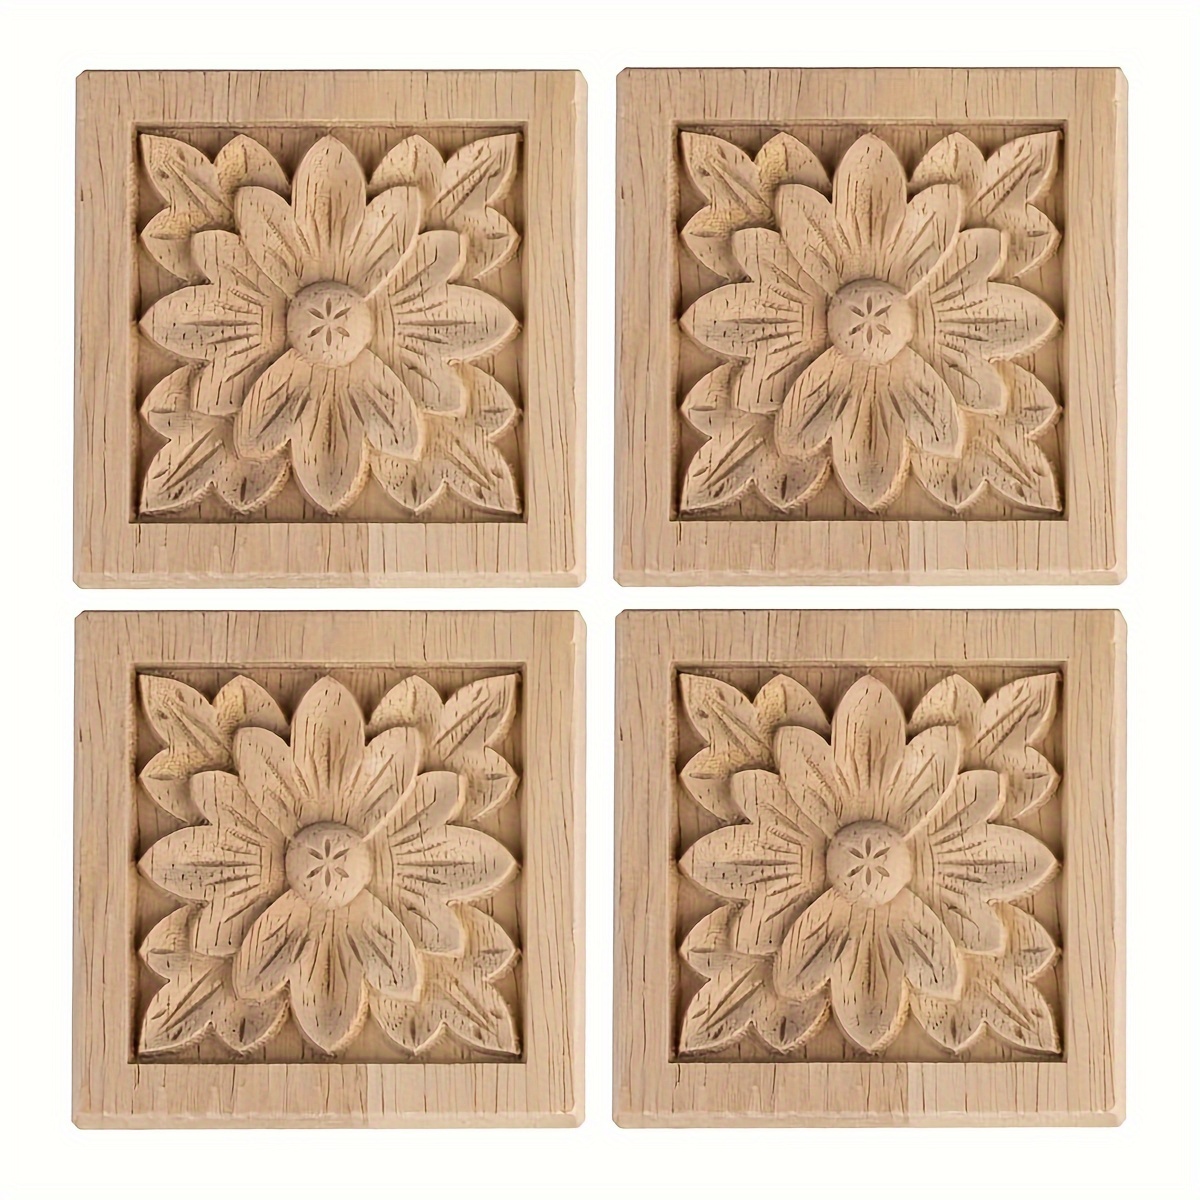 GZjiyu 4 molduras de madera, tallados en madera, adornos de madera,  apliques para decoración de puertas, armarios, muebles, ventanas, espejos